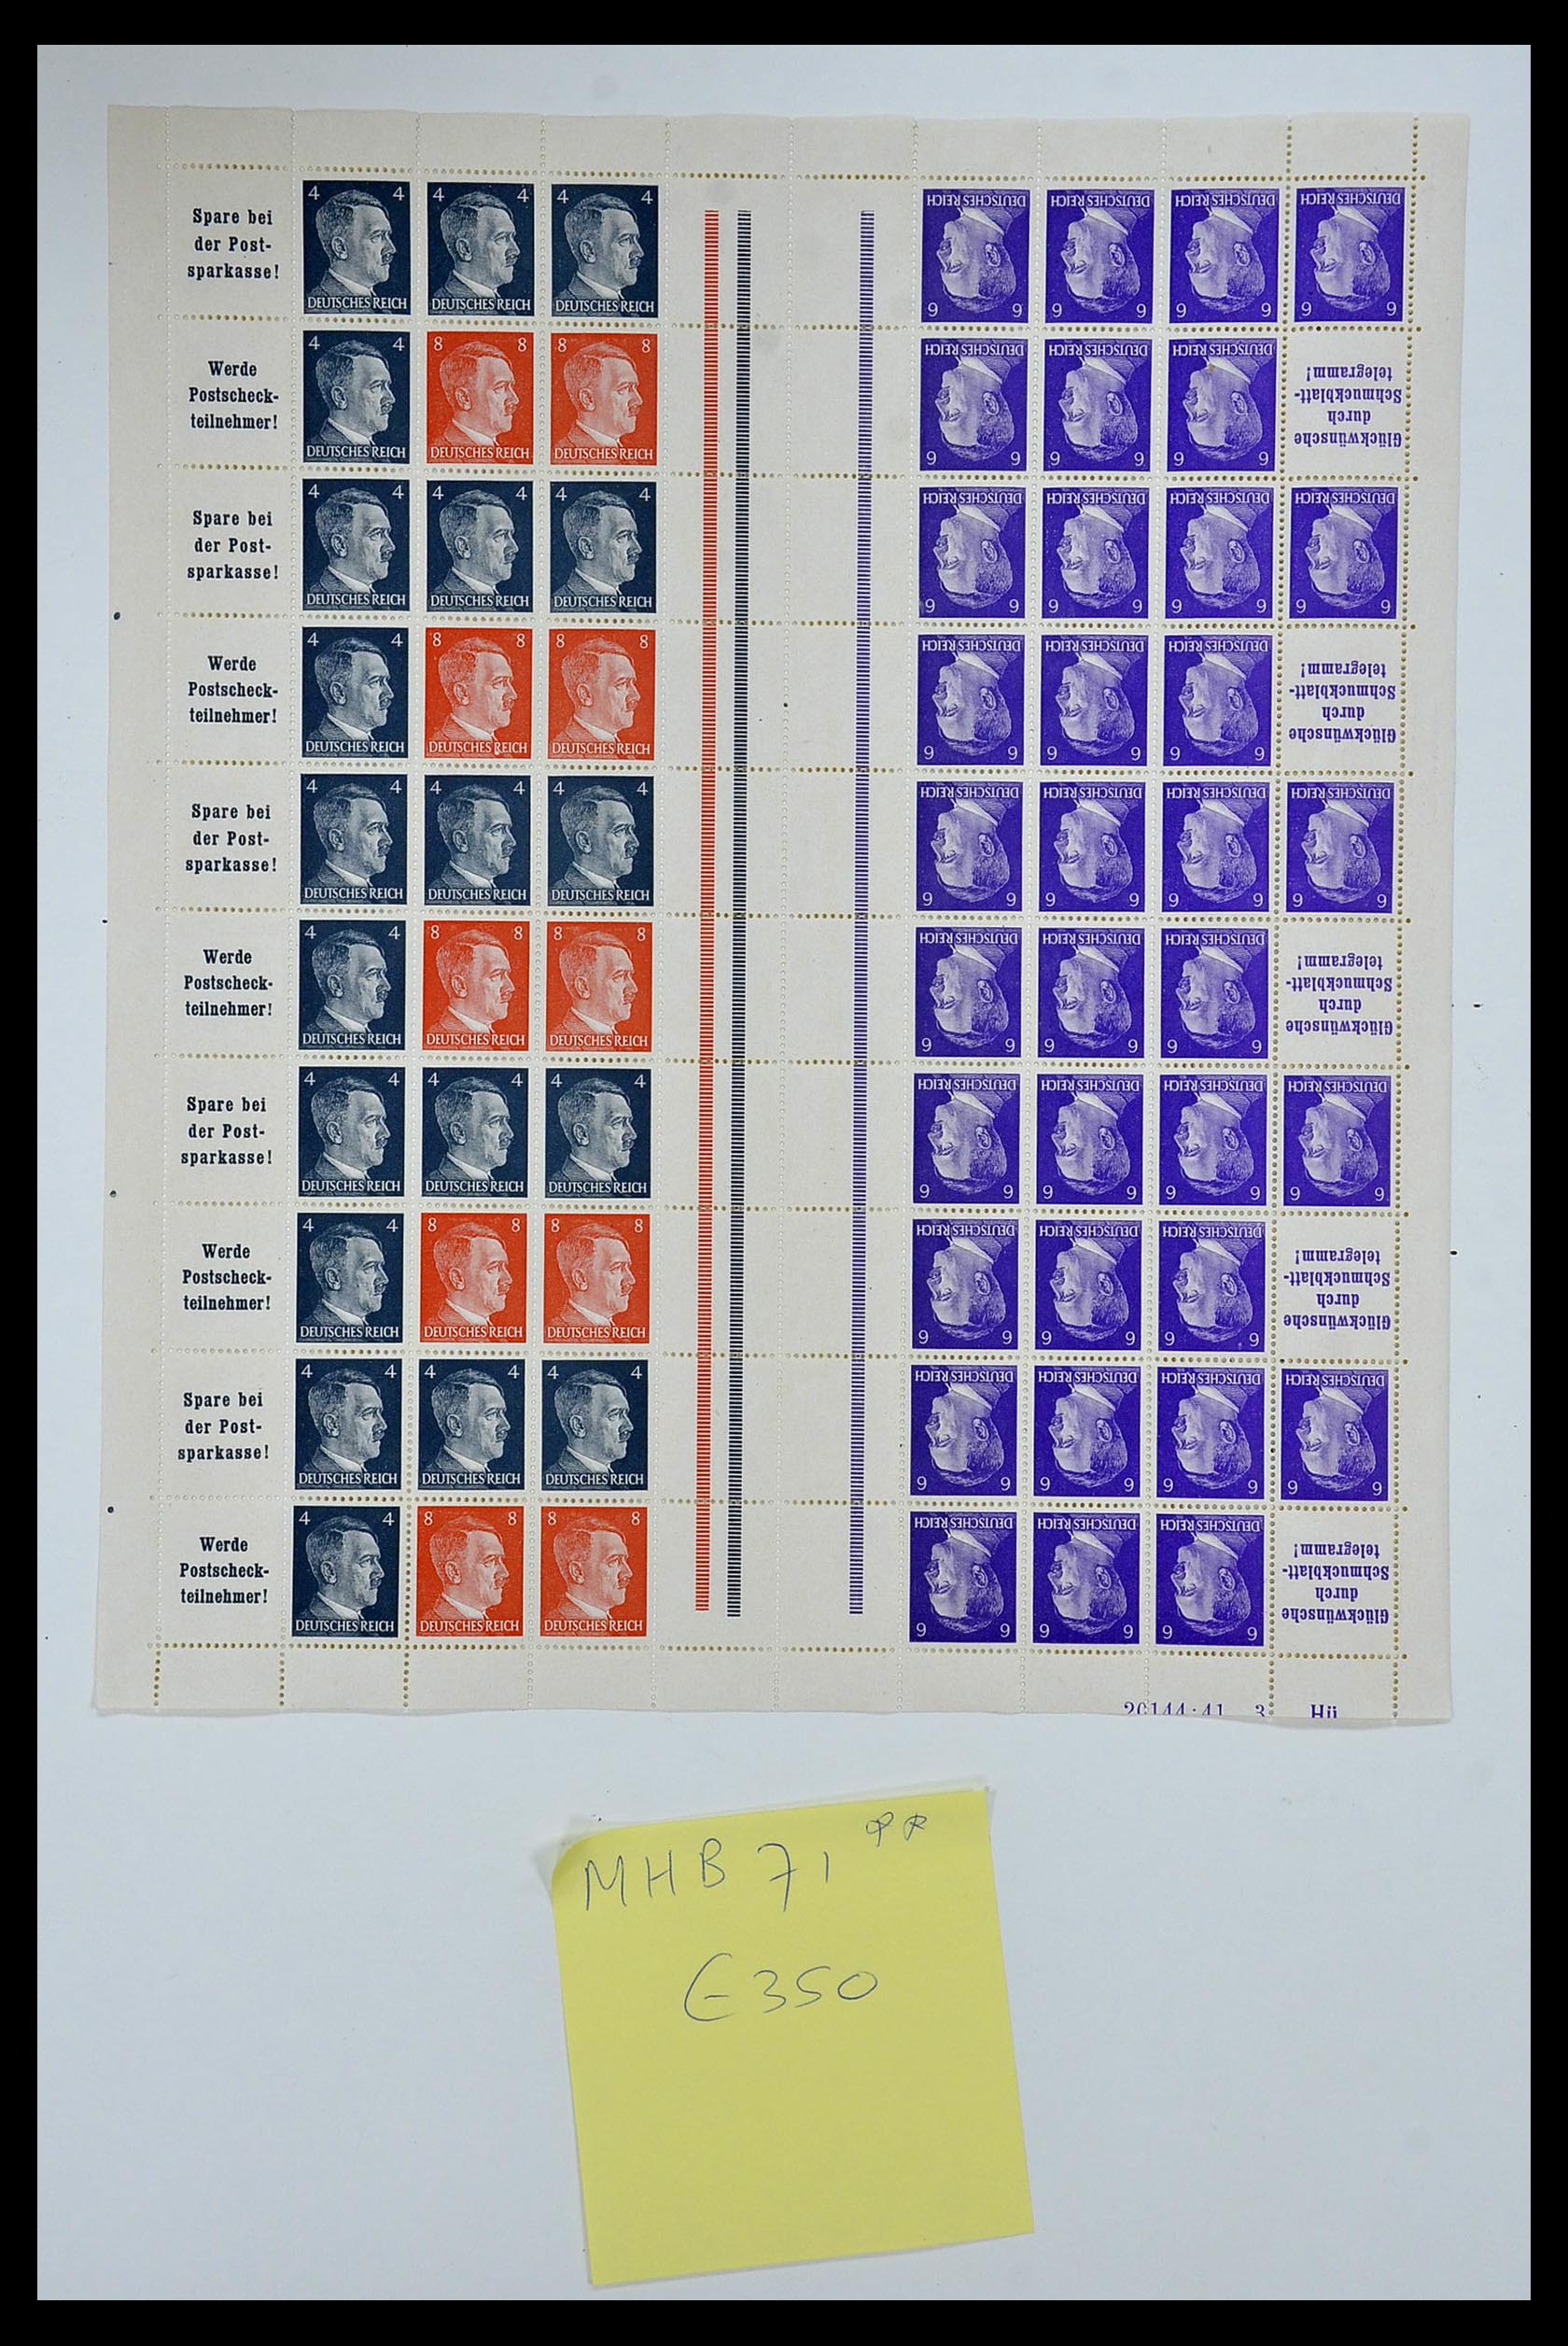 35075 045 - Stamp Collection 35075 German Reich Markenheftchenbogen 1933-1941.